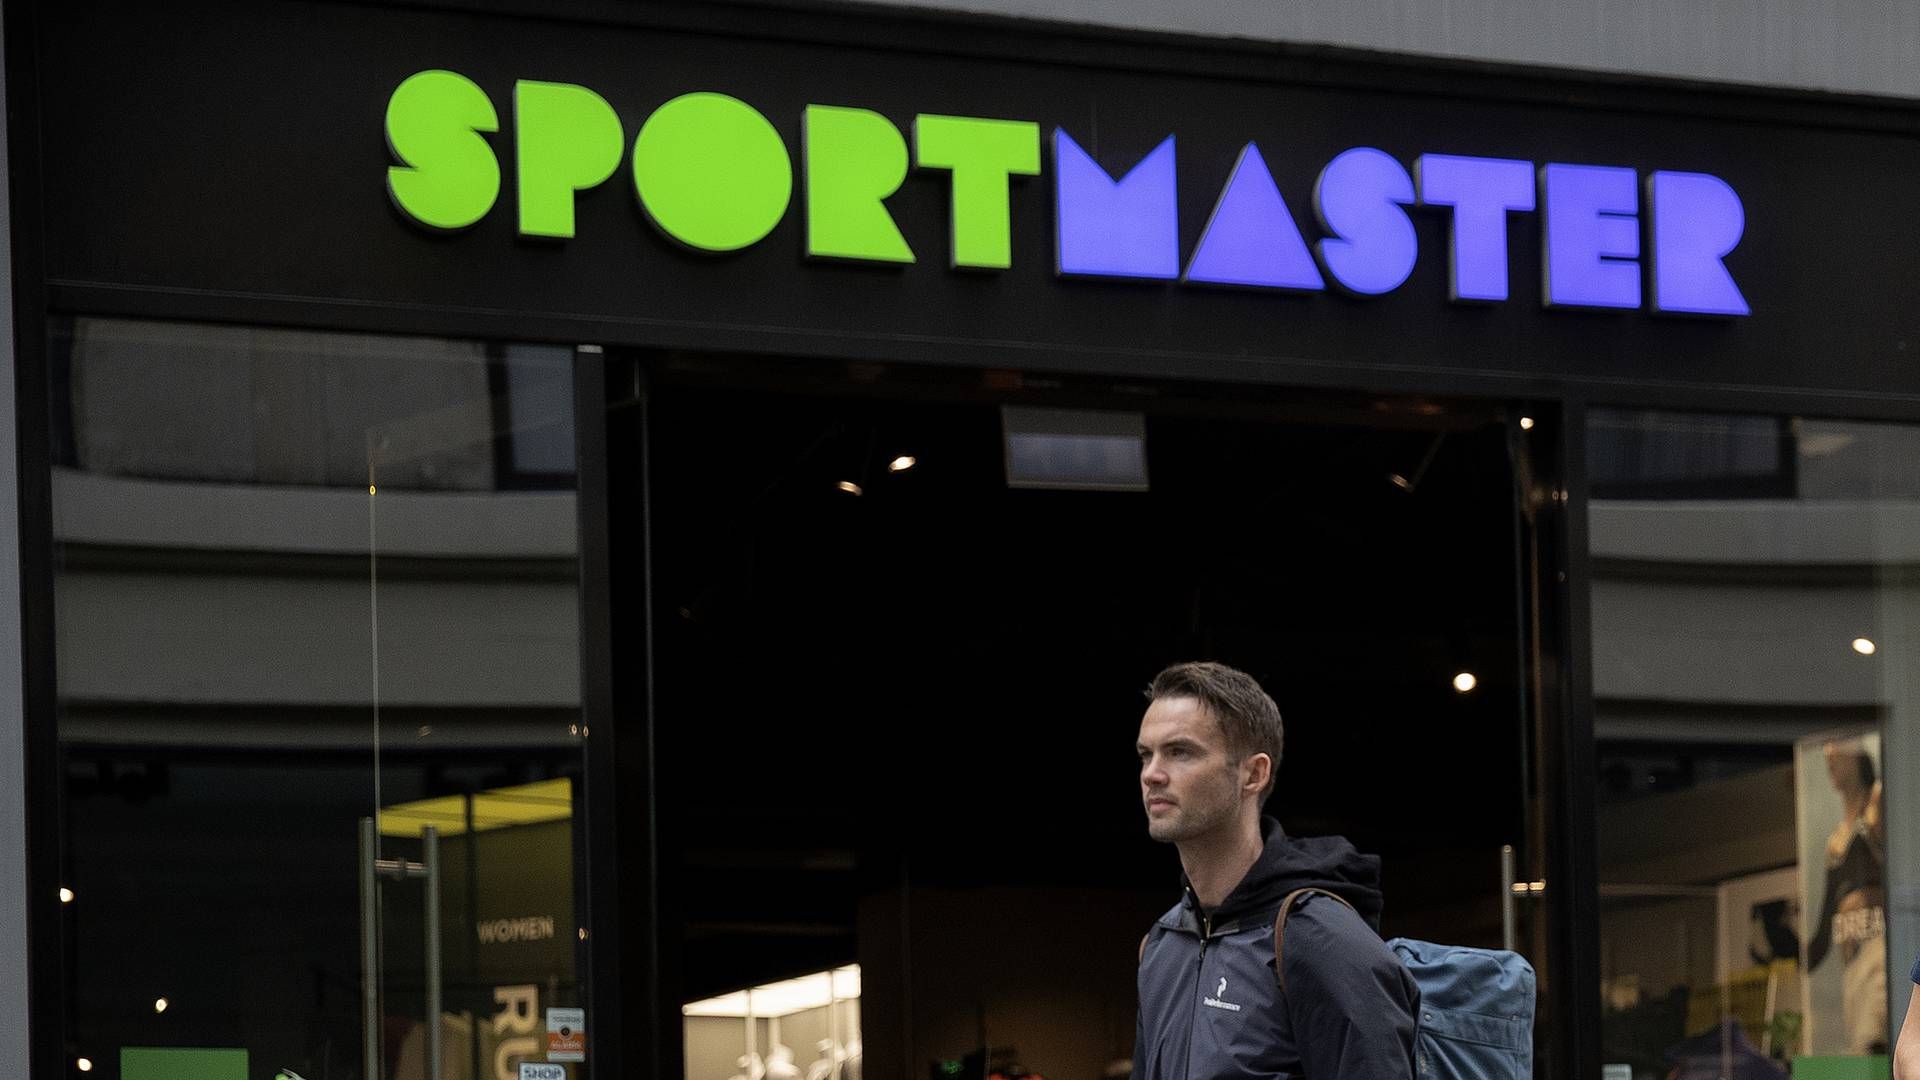 Sportmaster-kæden har 75 butikker i Danmark, som nu sættes til salg. | Foto: Peter Hove Olesen / Ritzau Scanpix